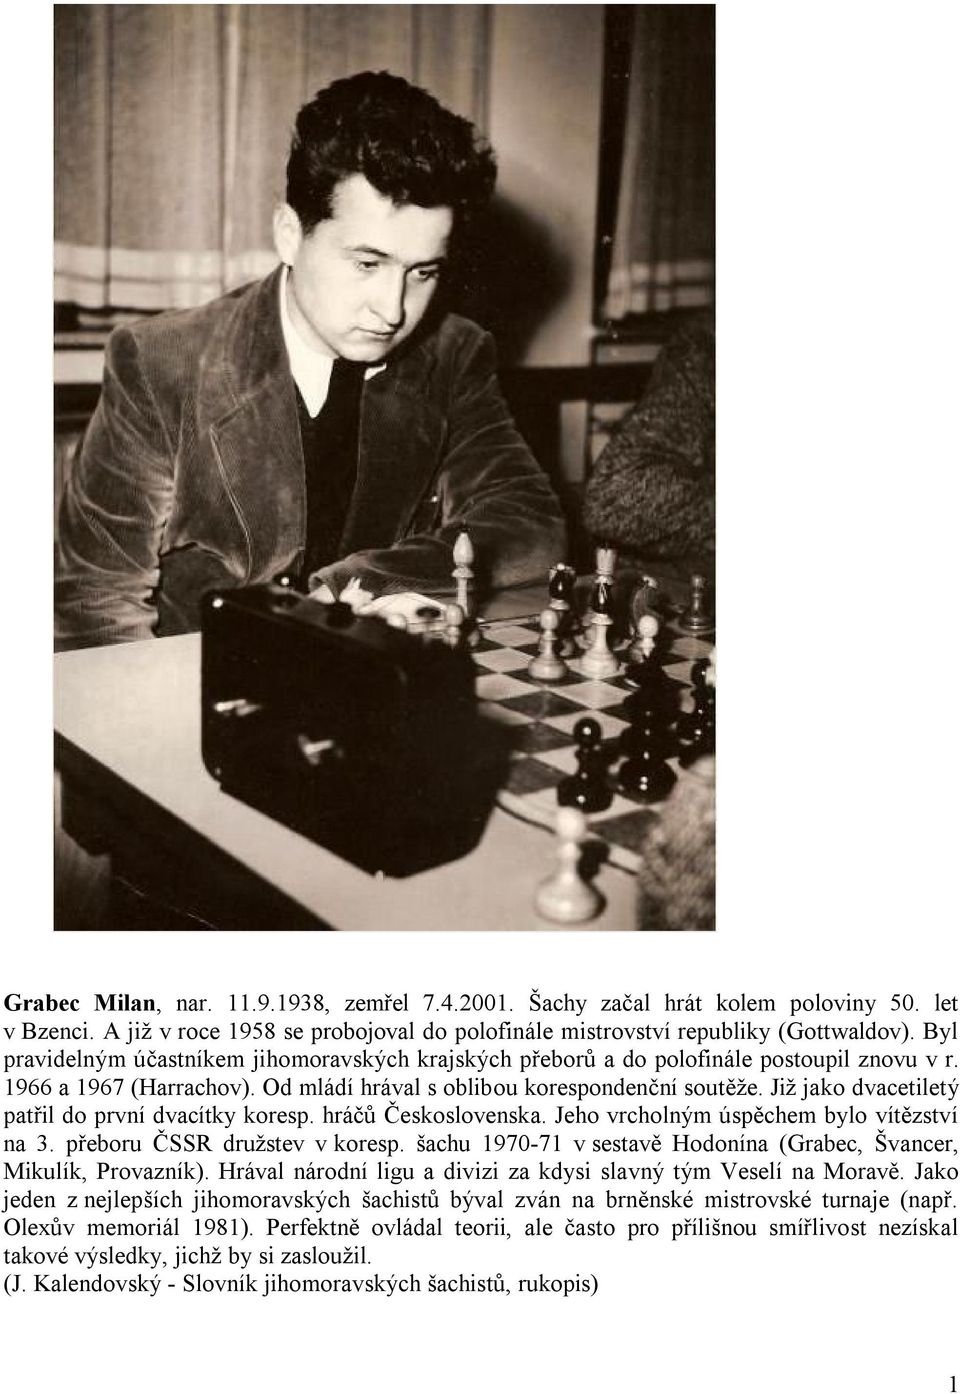 Již jako dvacetiletý patřil do první dvacítky koresp. hráčů Československa. Jeho vrcholným úspěchem bylo vítězství na 3. přeboru ČSSR družstev v koresp.